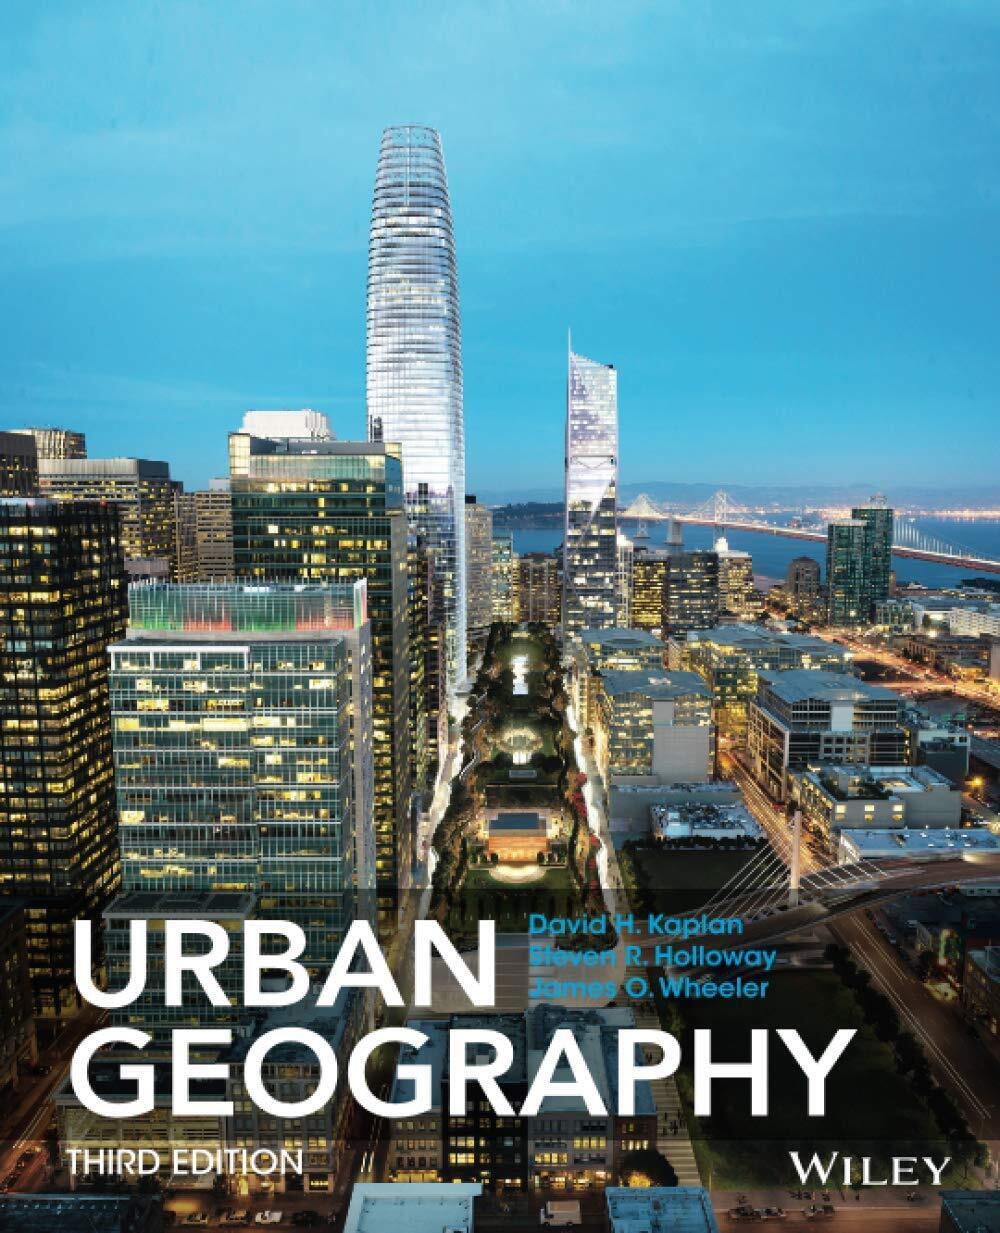 Urban Geography - Dave H. Kaplan, Steven Holloway - WILEY, 2014 libro usato